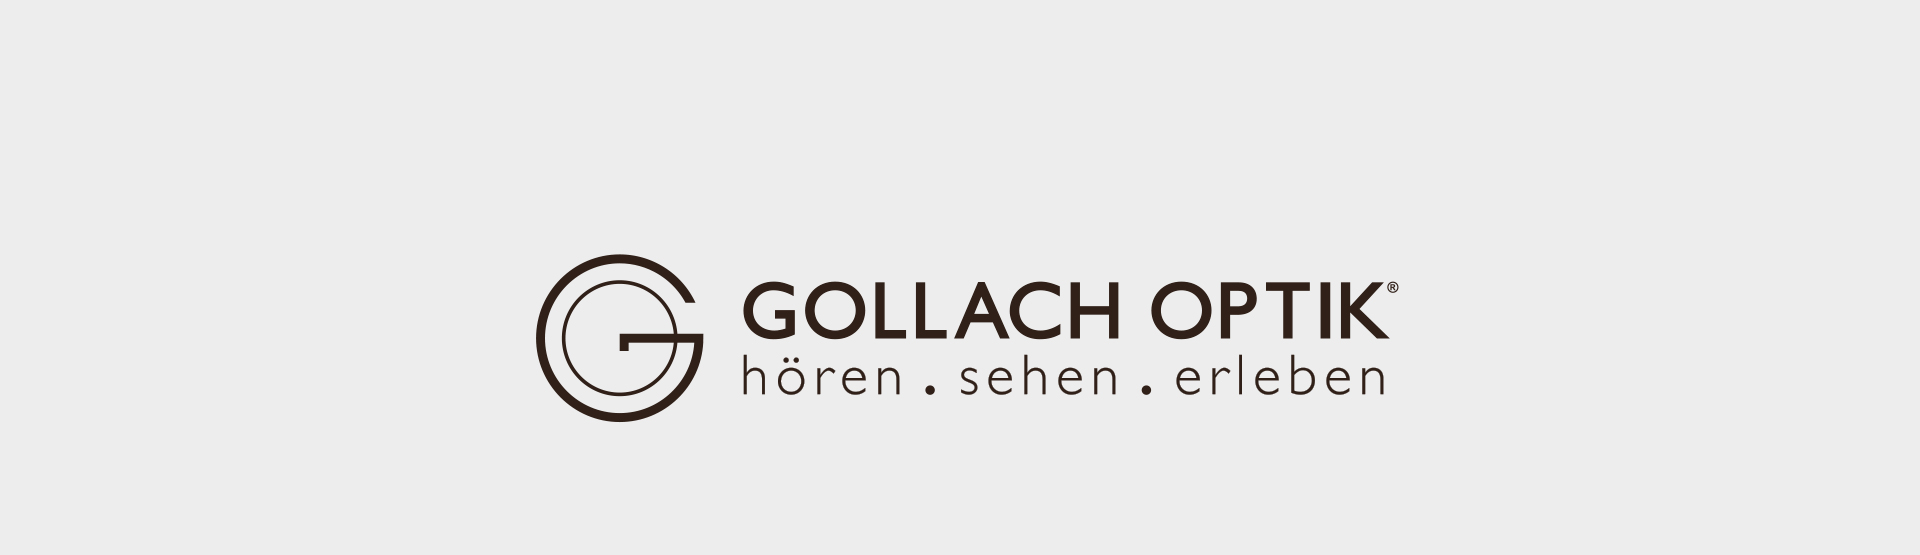 Das Team von Gollach Optik